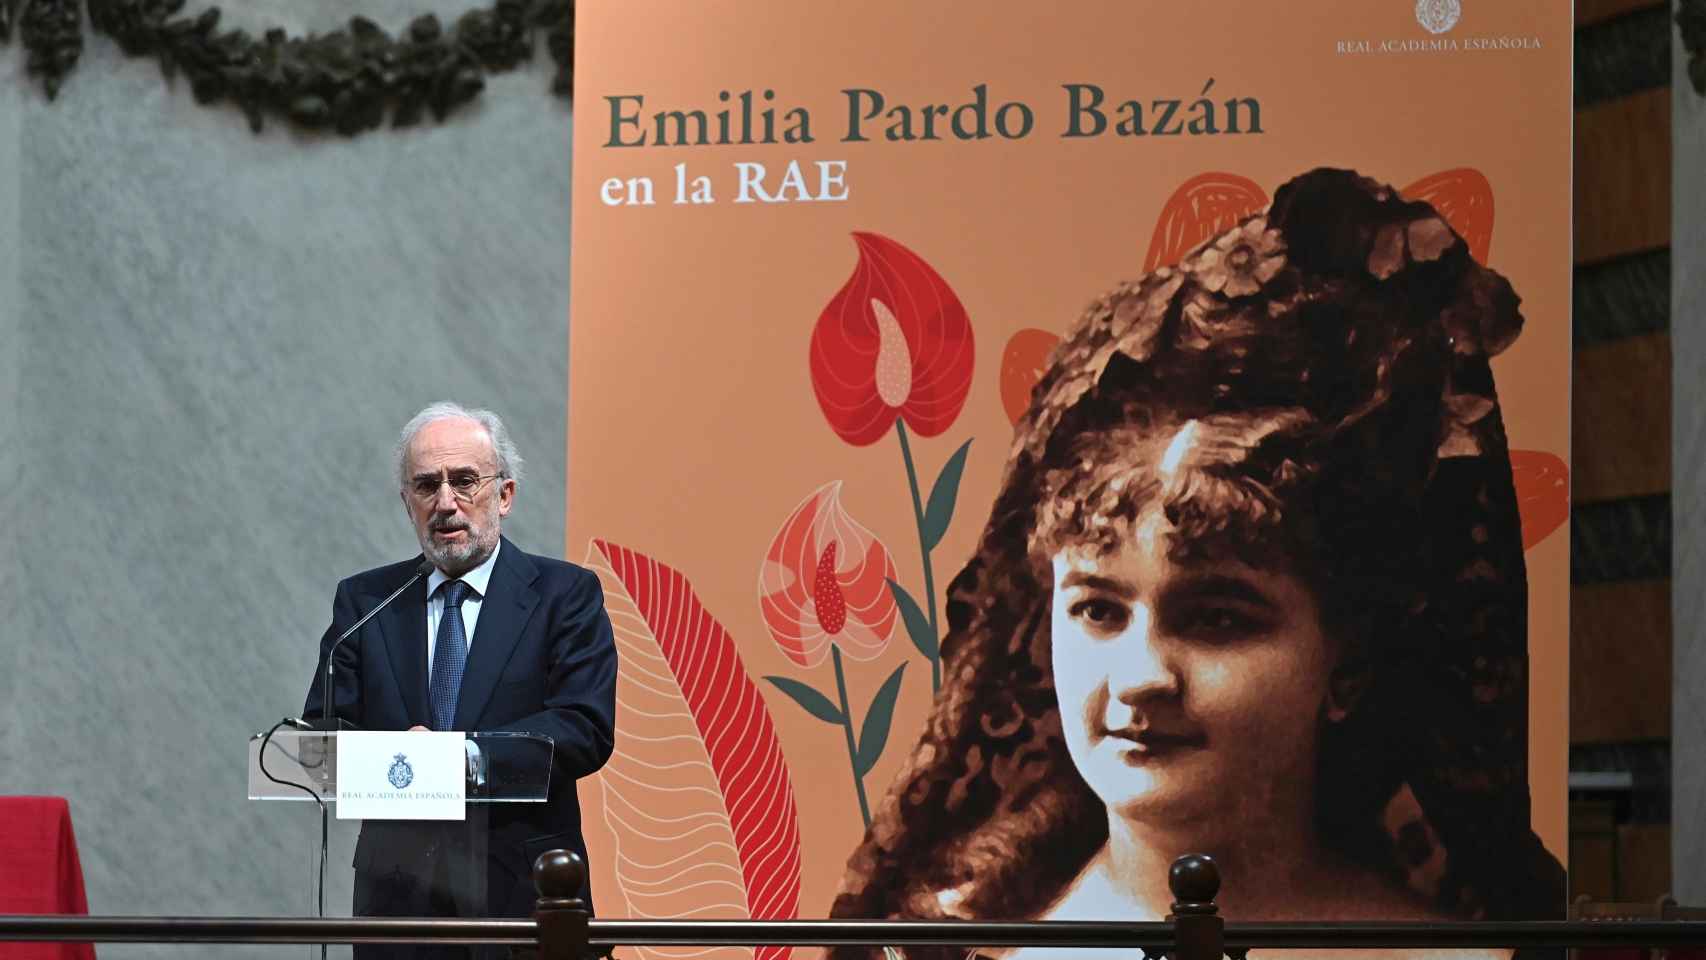 Santiago Muñoz Machado, director de la RAE, durante el acto de homenaje a Emilia Pardo Bazán.